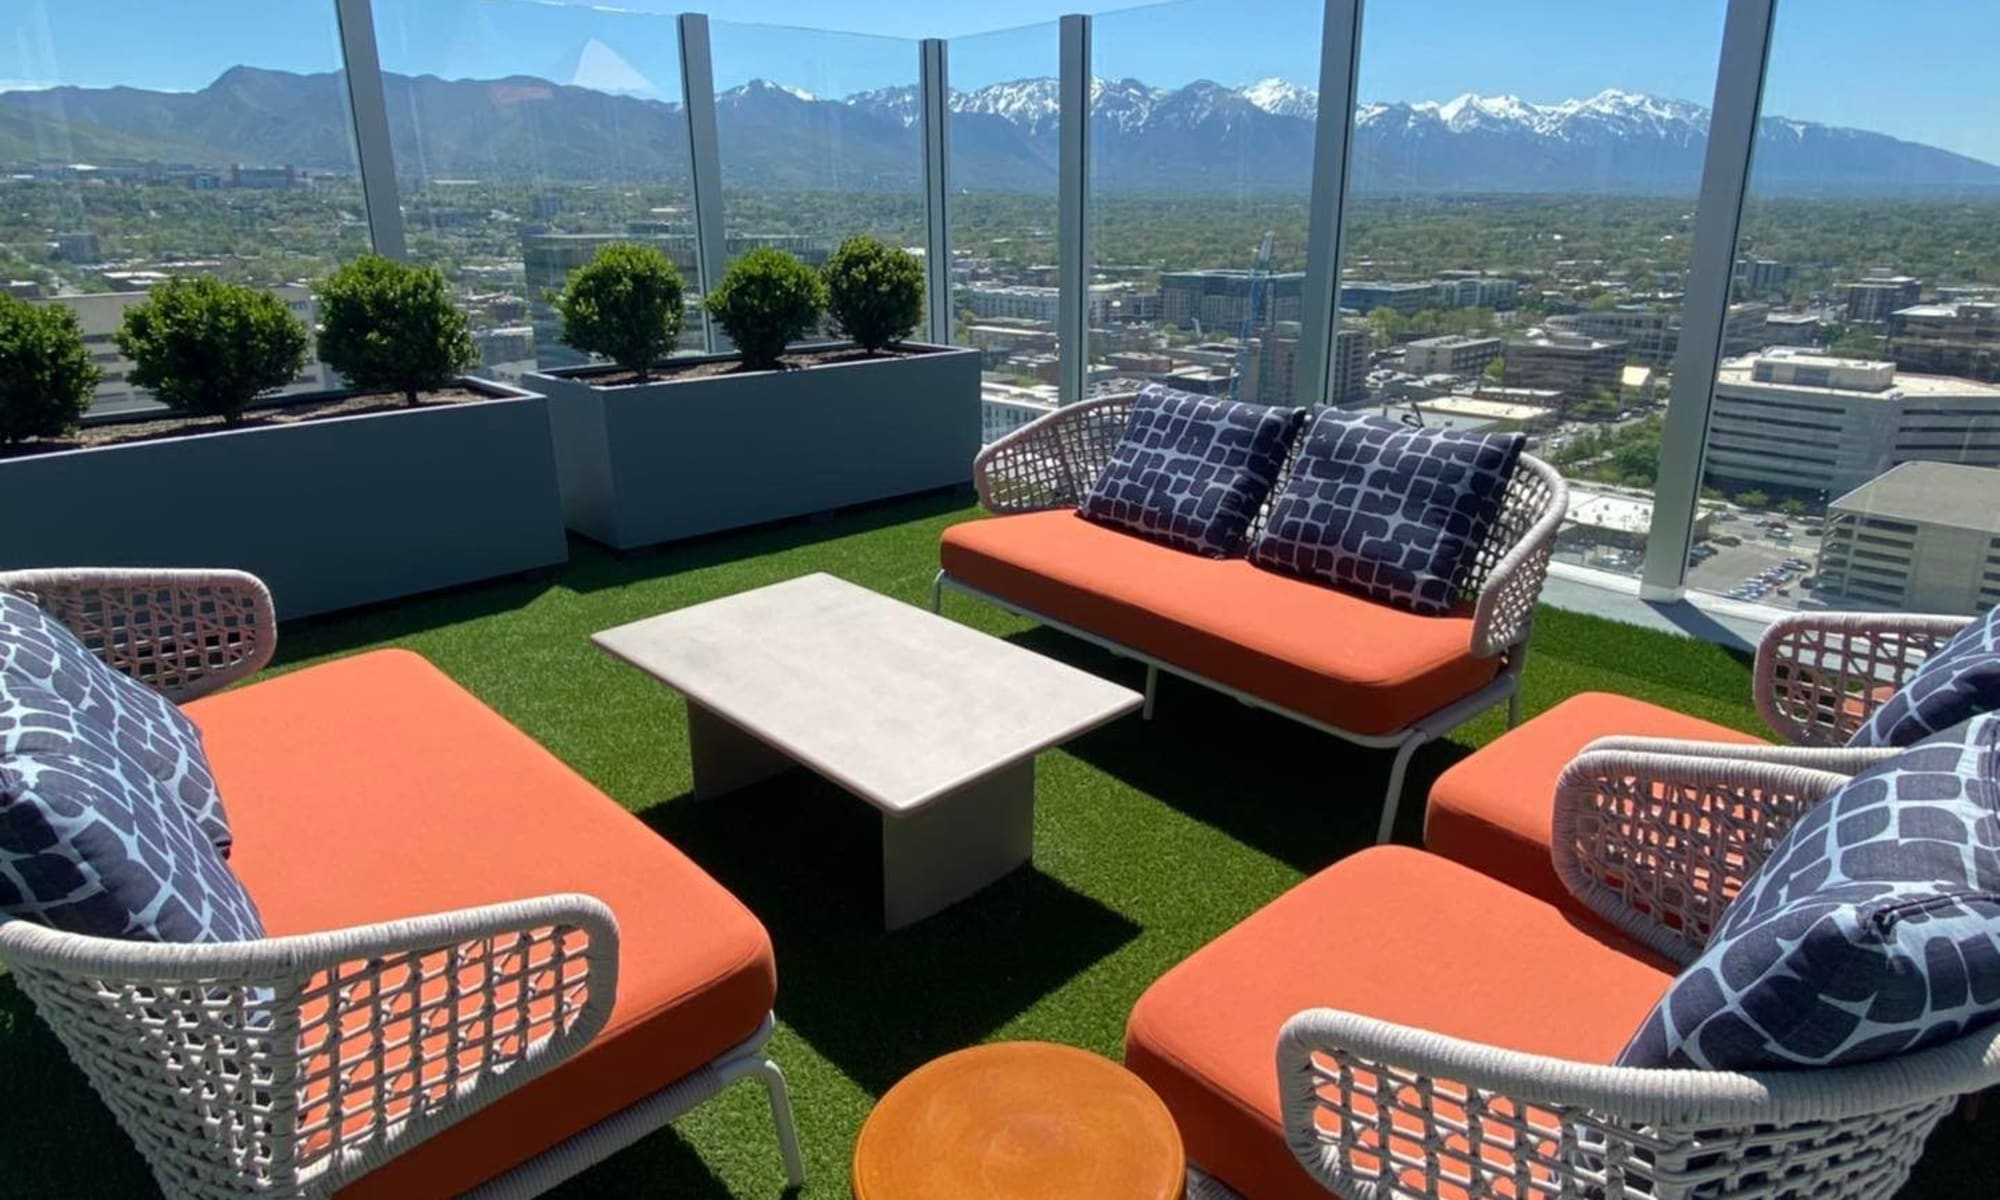 Upper deck patio chairs of Liberty SKY in Salt Lake City, Utah